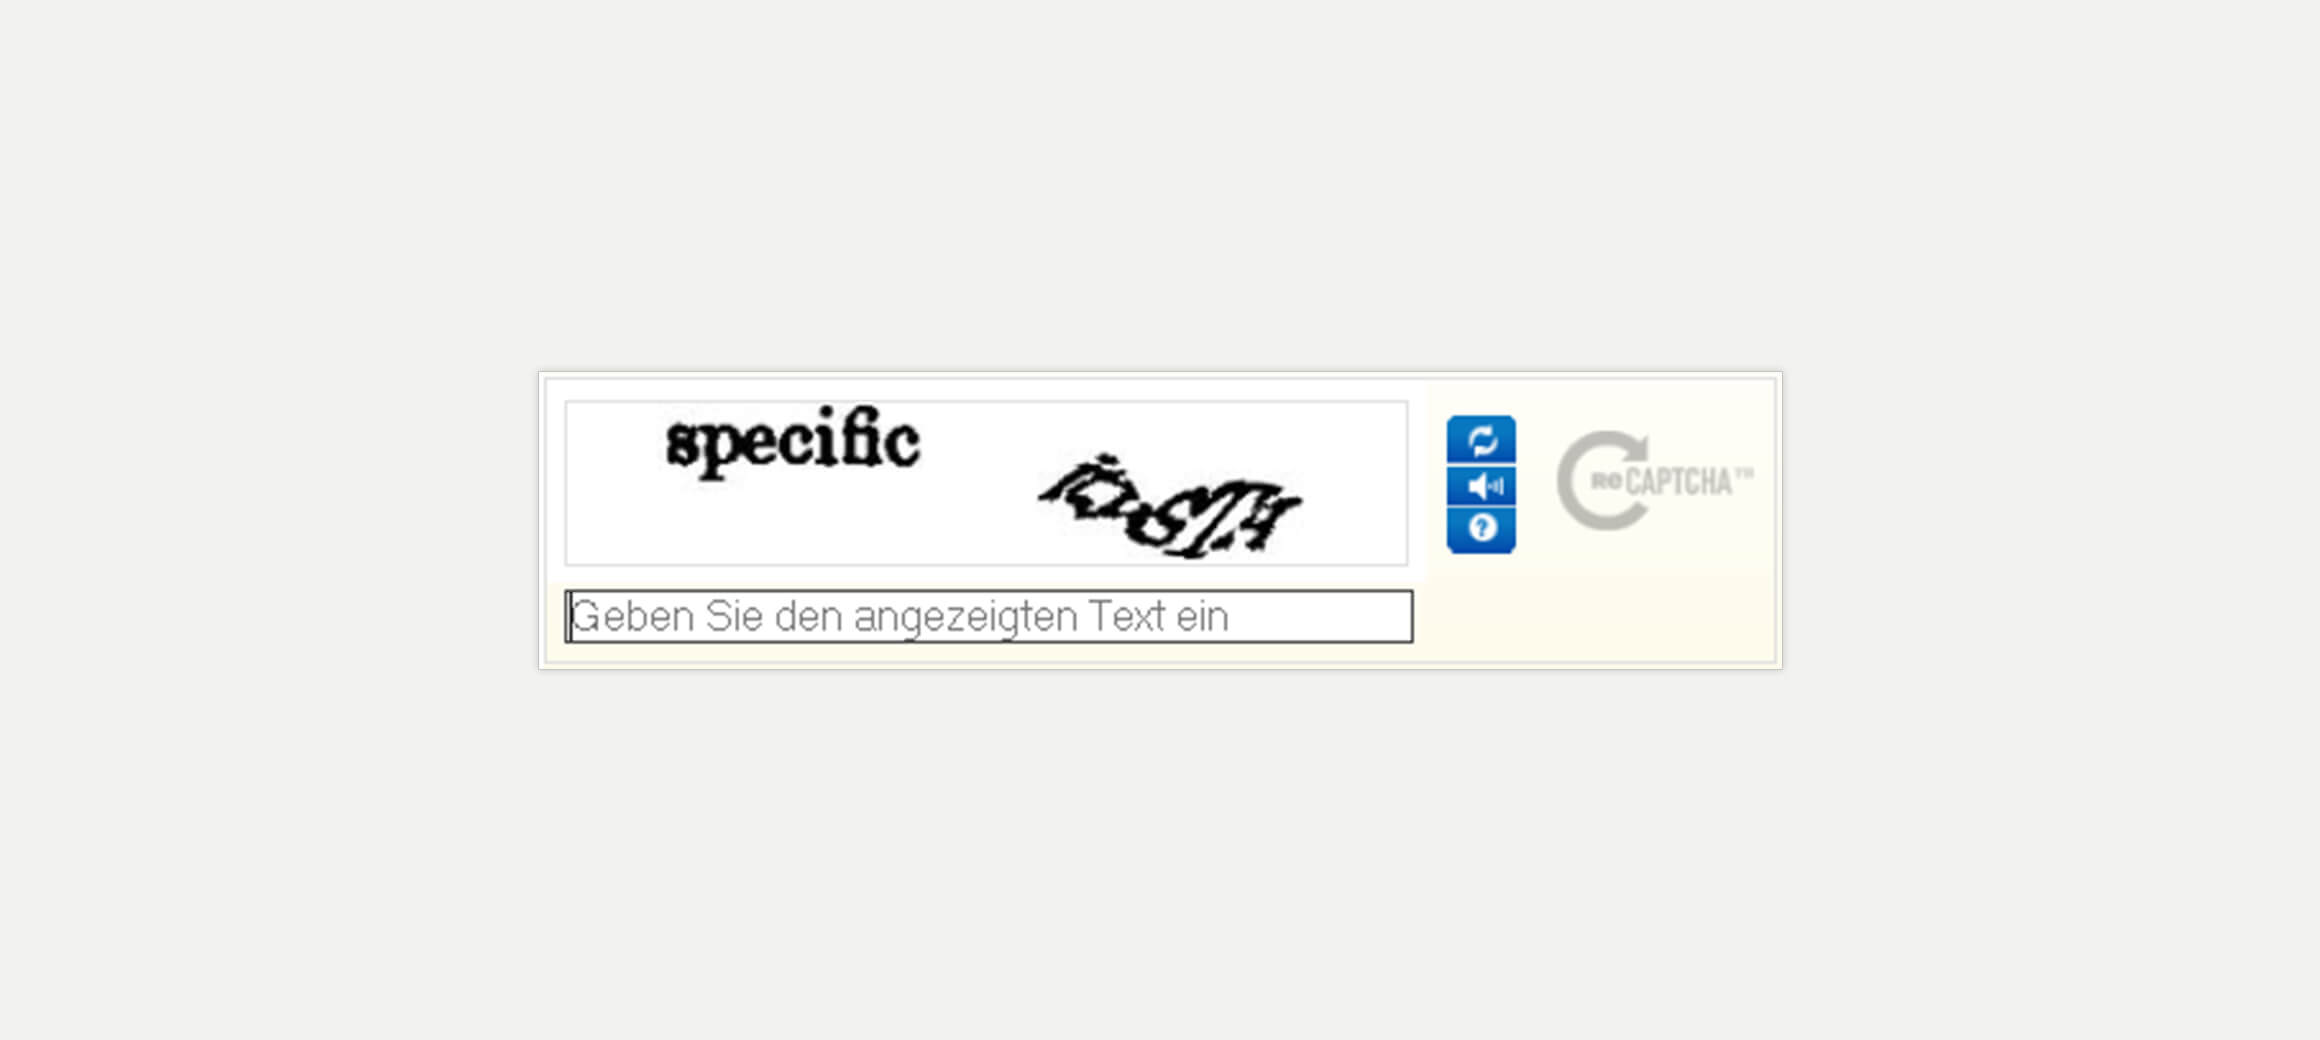 Ein Screenshot von Google's reCAPTCHA